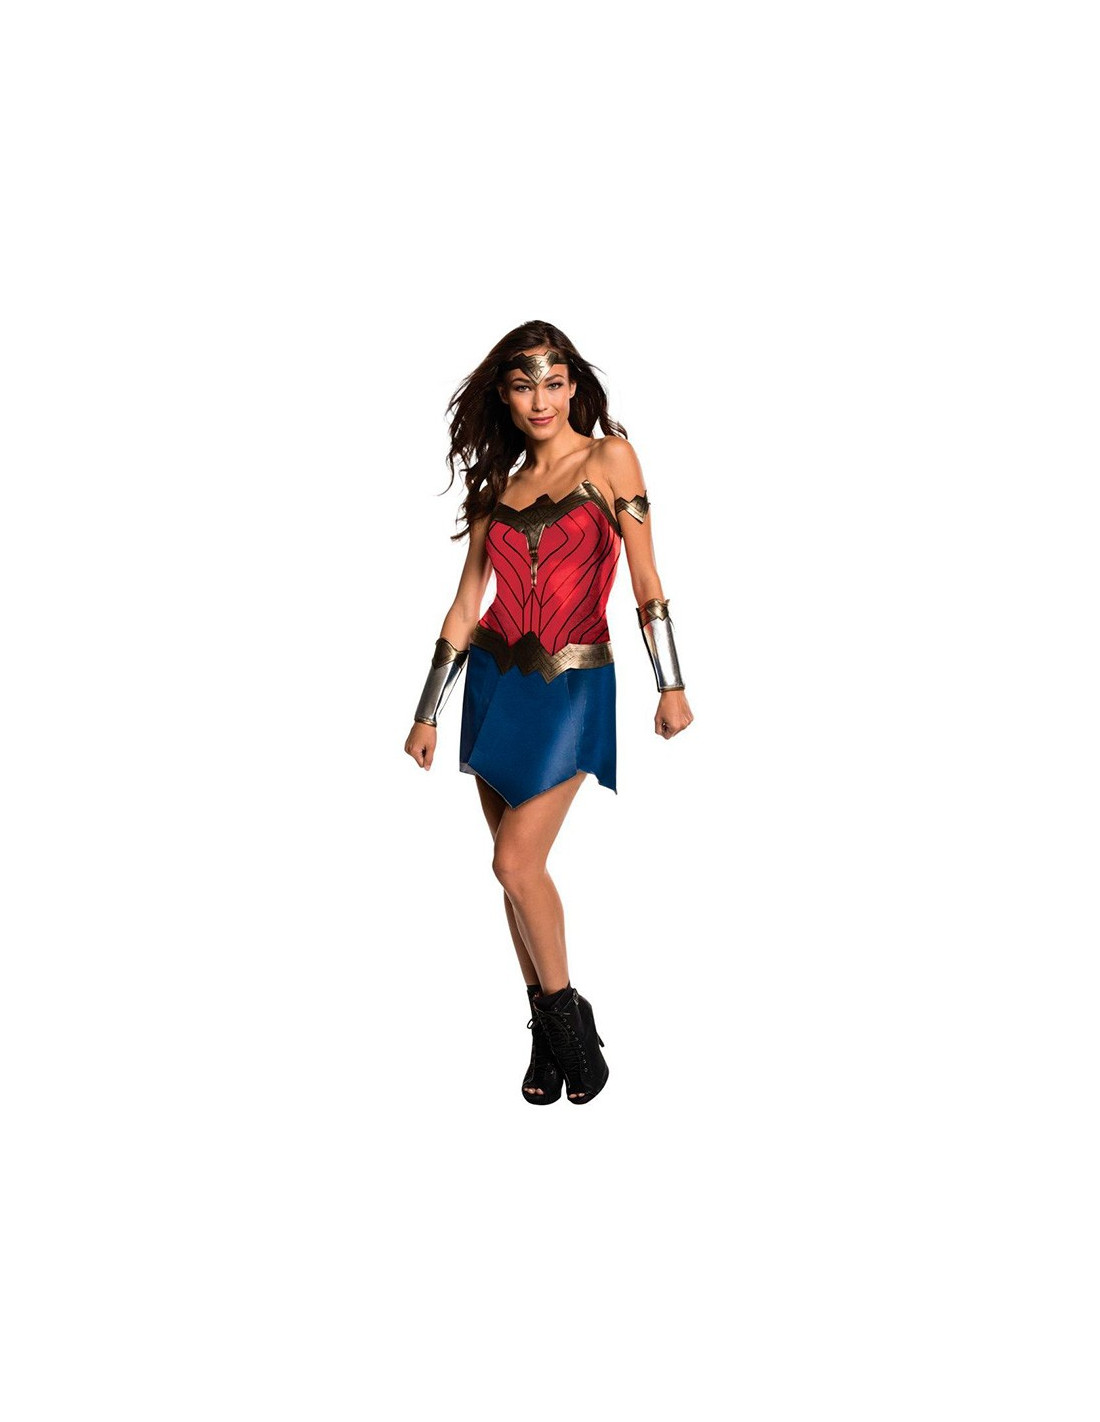 Absay Surrey Acostumbrar Disfraz de Wonder Woman Película para mujer - Comprar en Tienda Bacanal